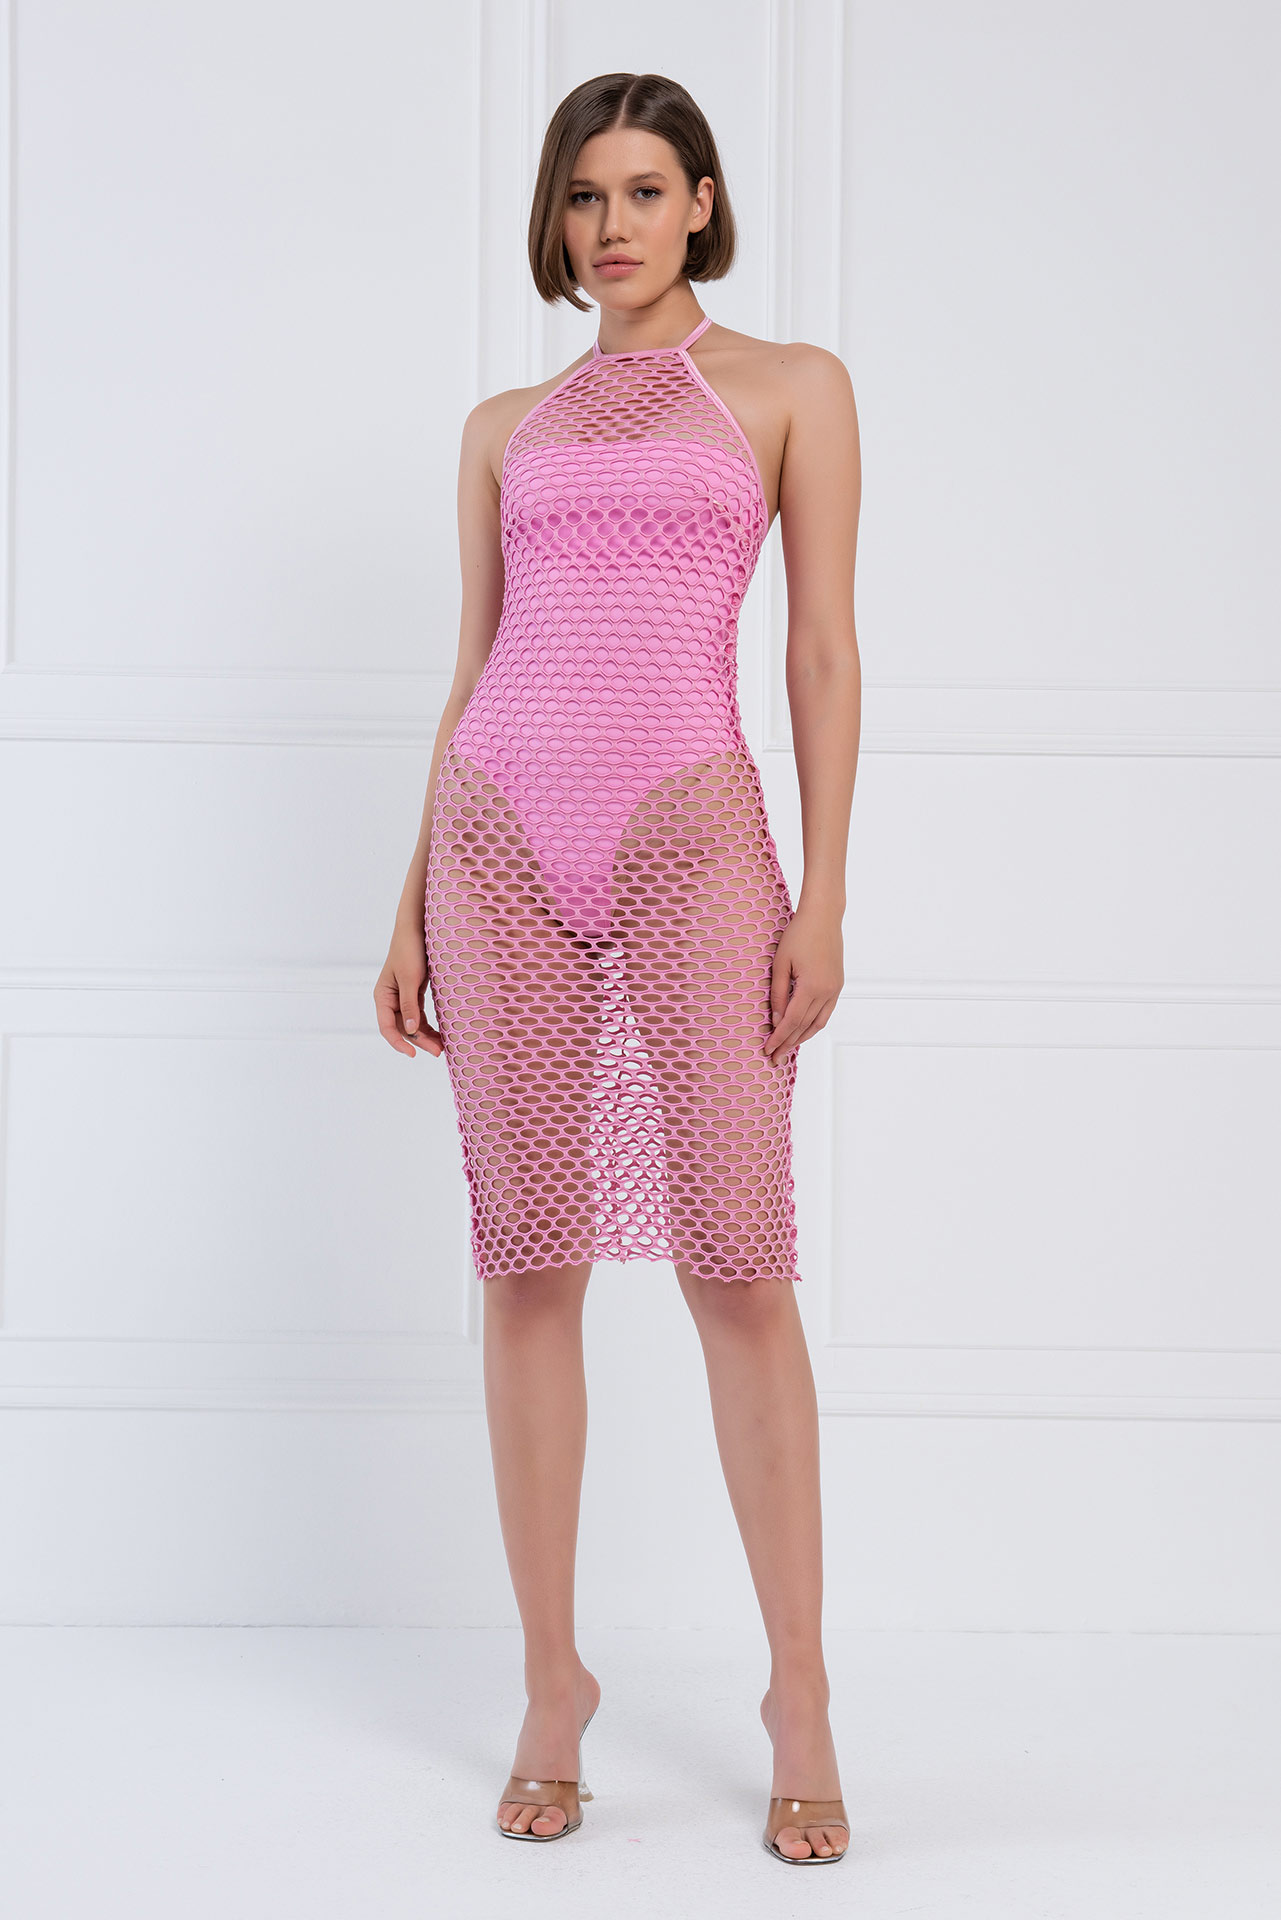 Wholesale Halter Neck Pink Fishnet Dress